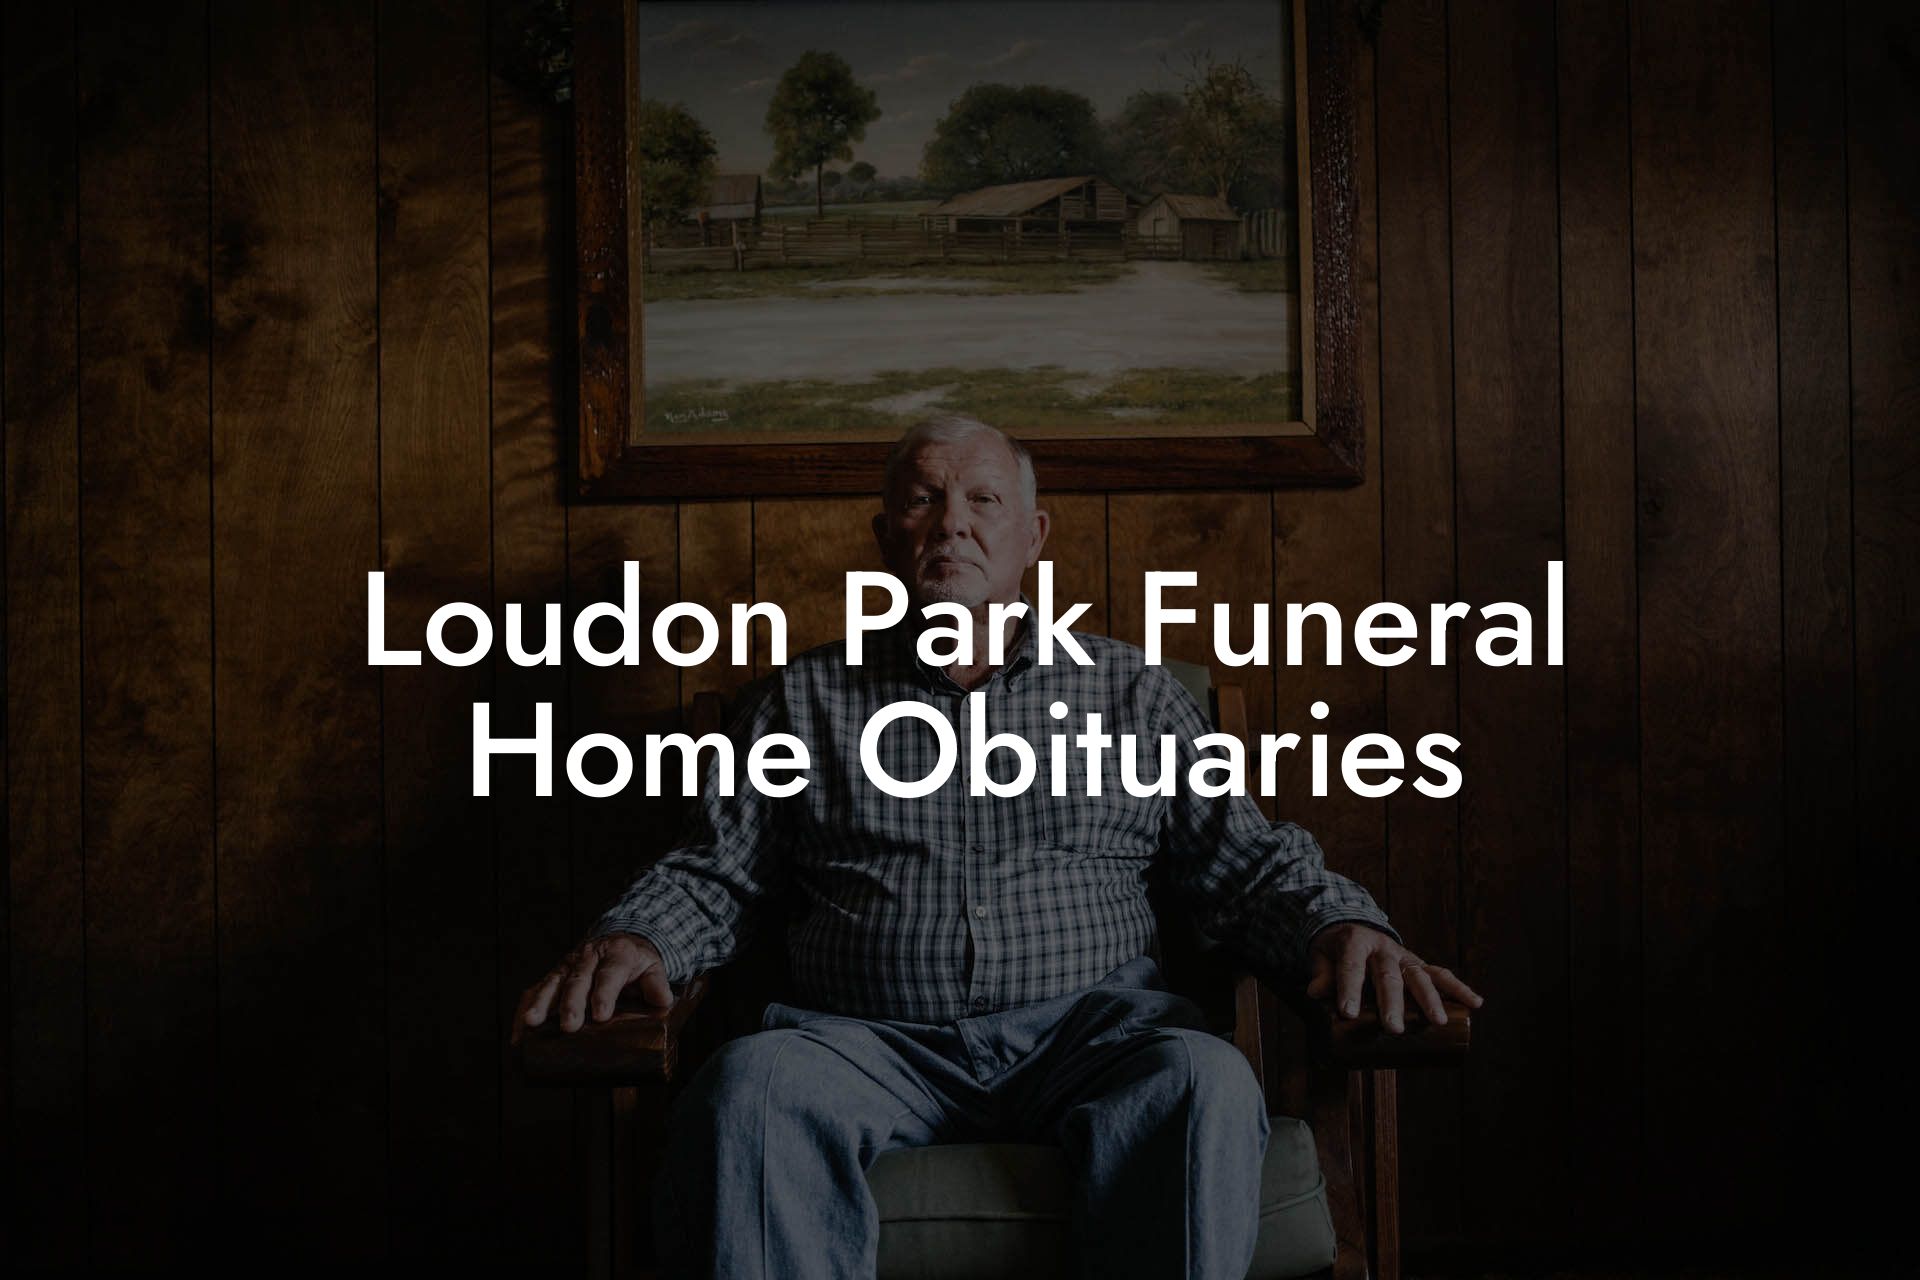 Loudon Park Funeral Home Obituaries